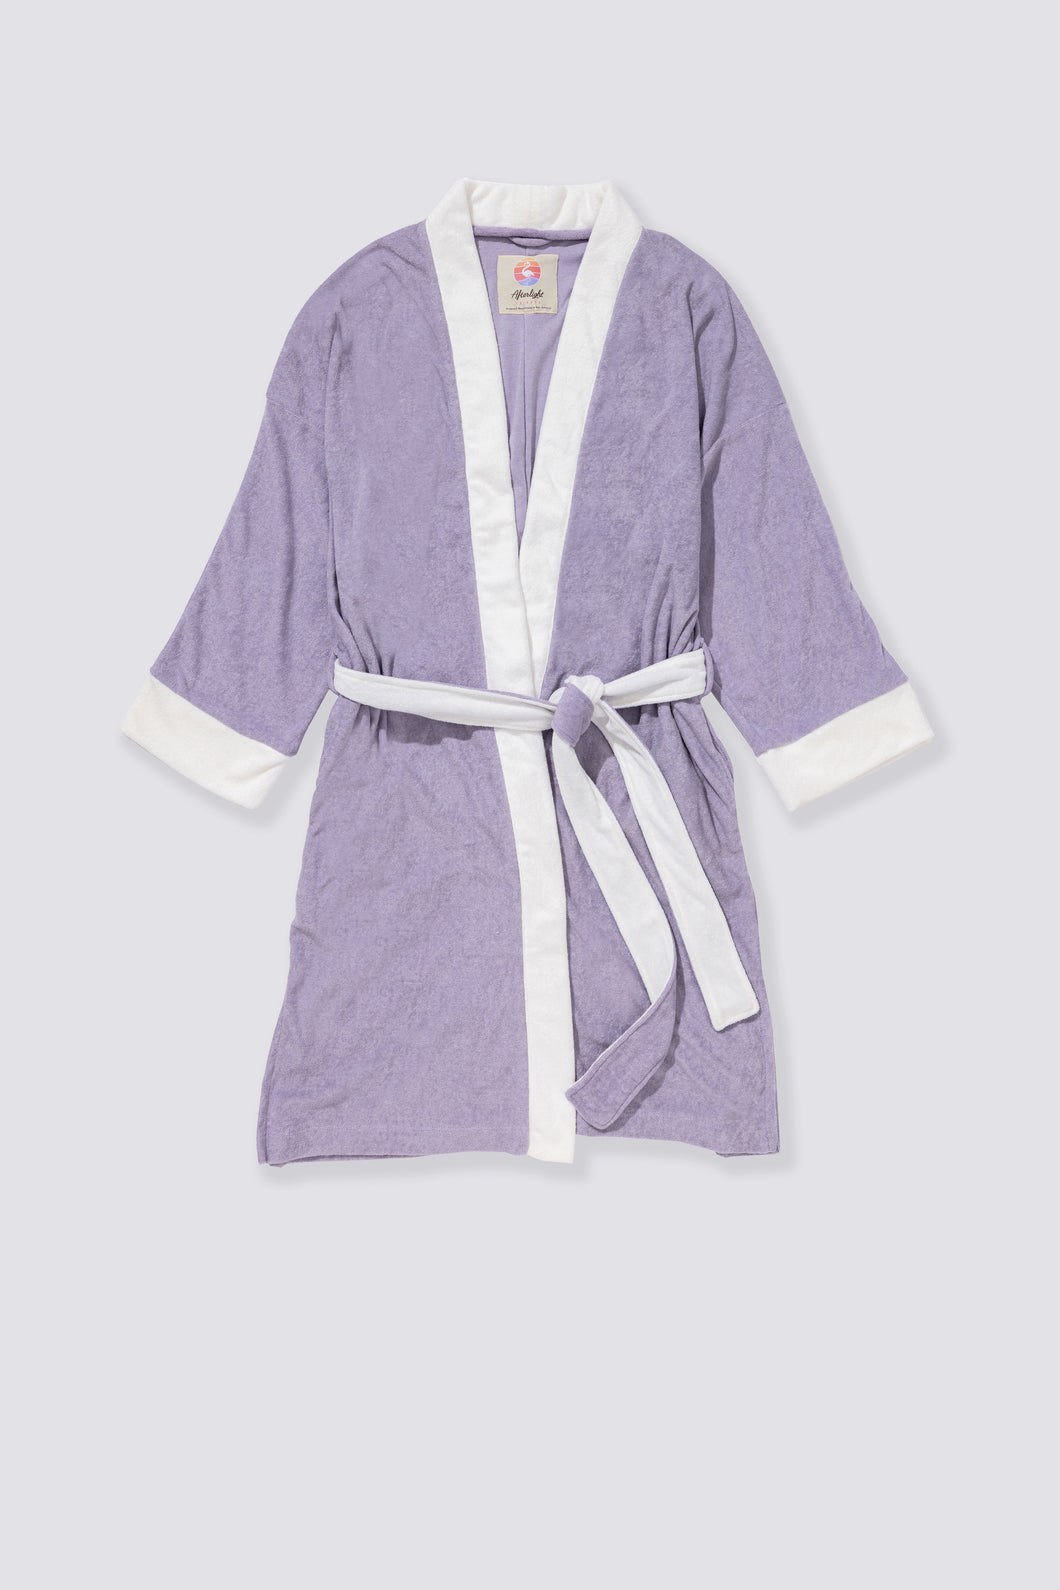 Terry Cloth Kimono - French Lavender